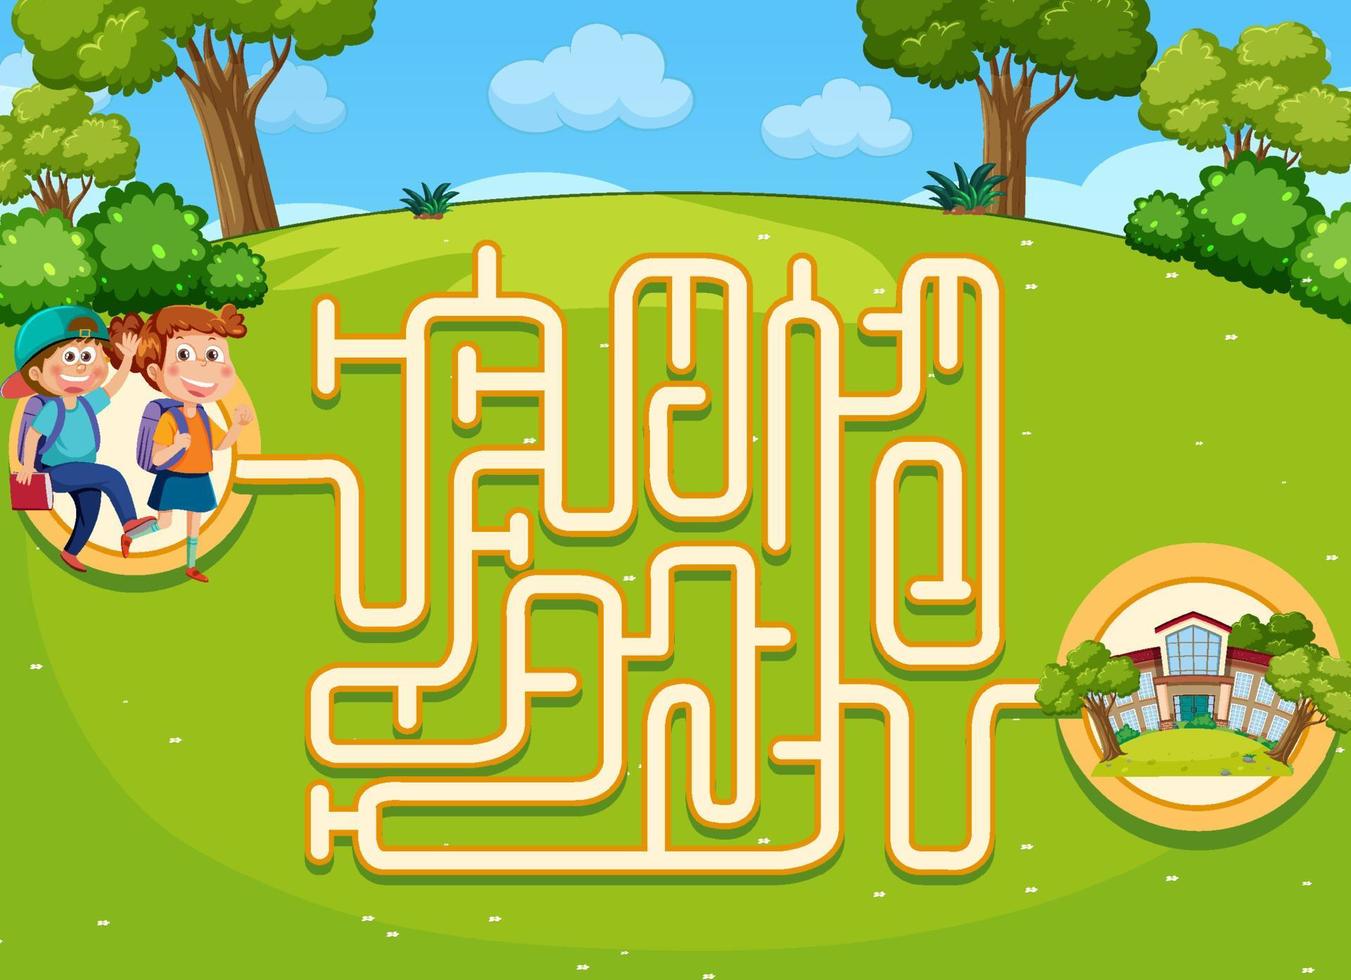 Labyrinth-Spielvorlage für Kinder vektor